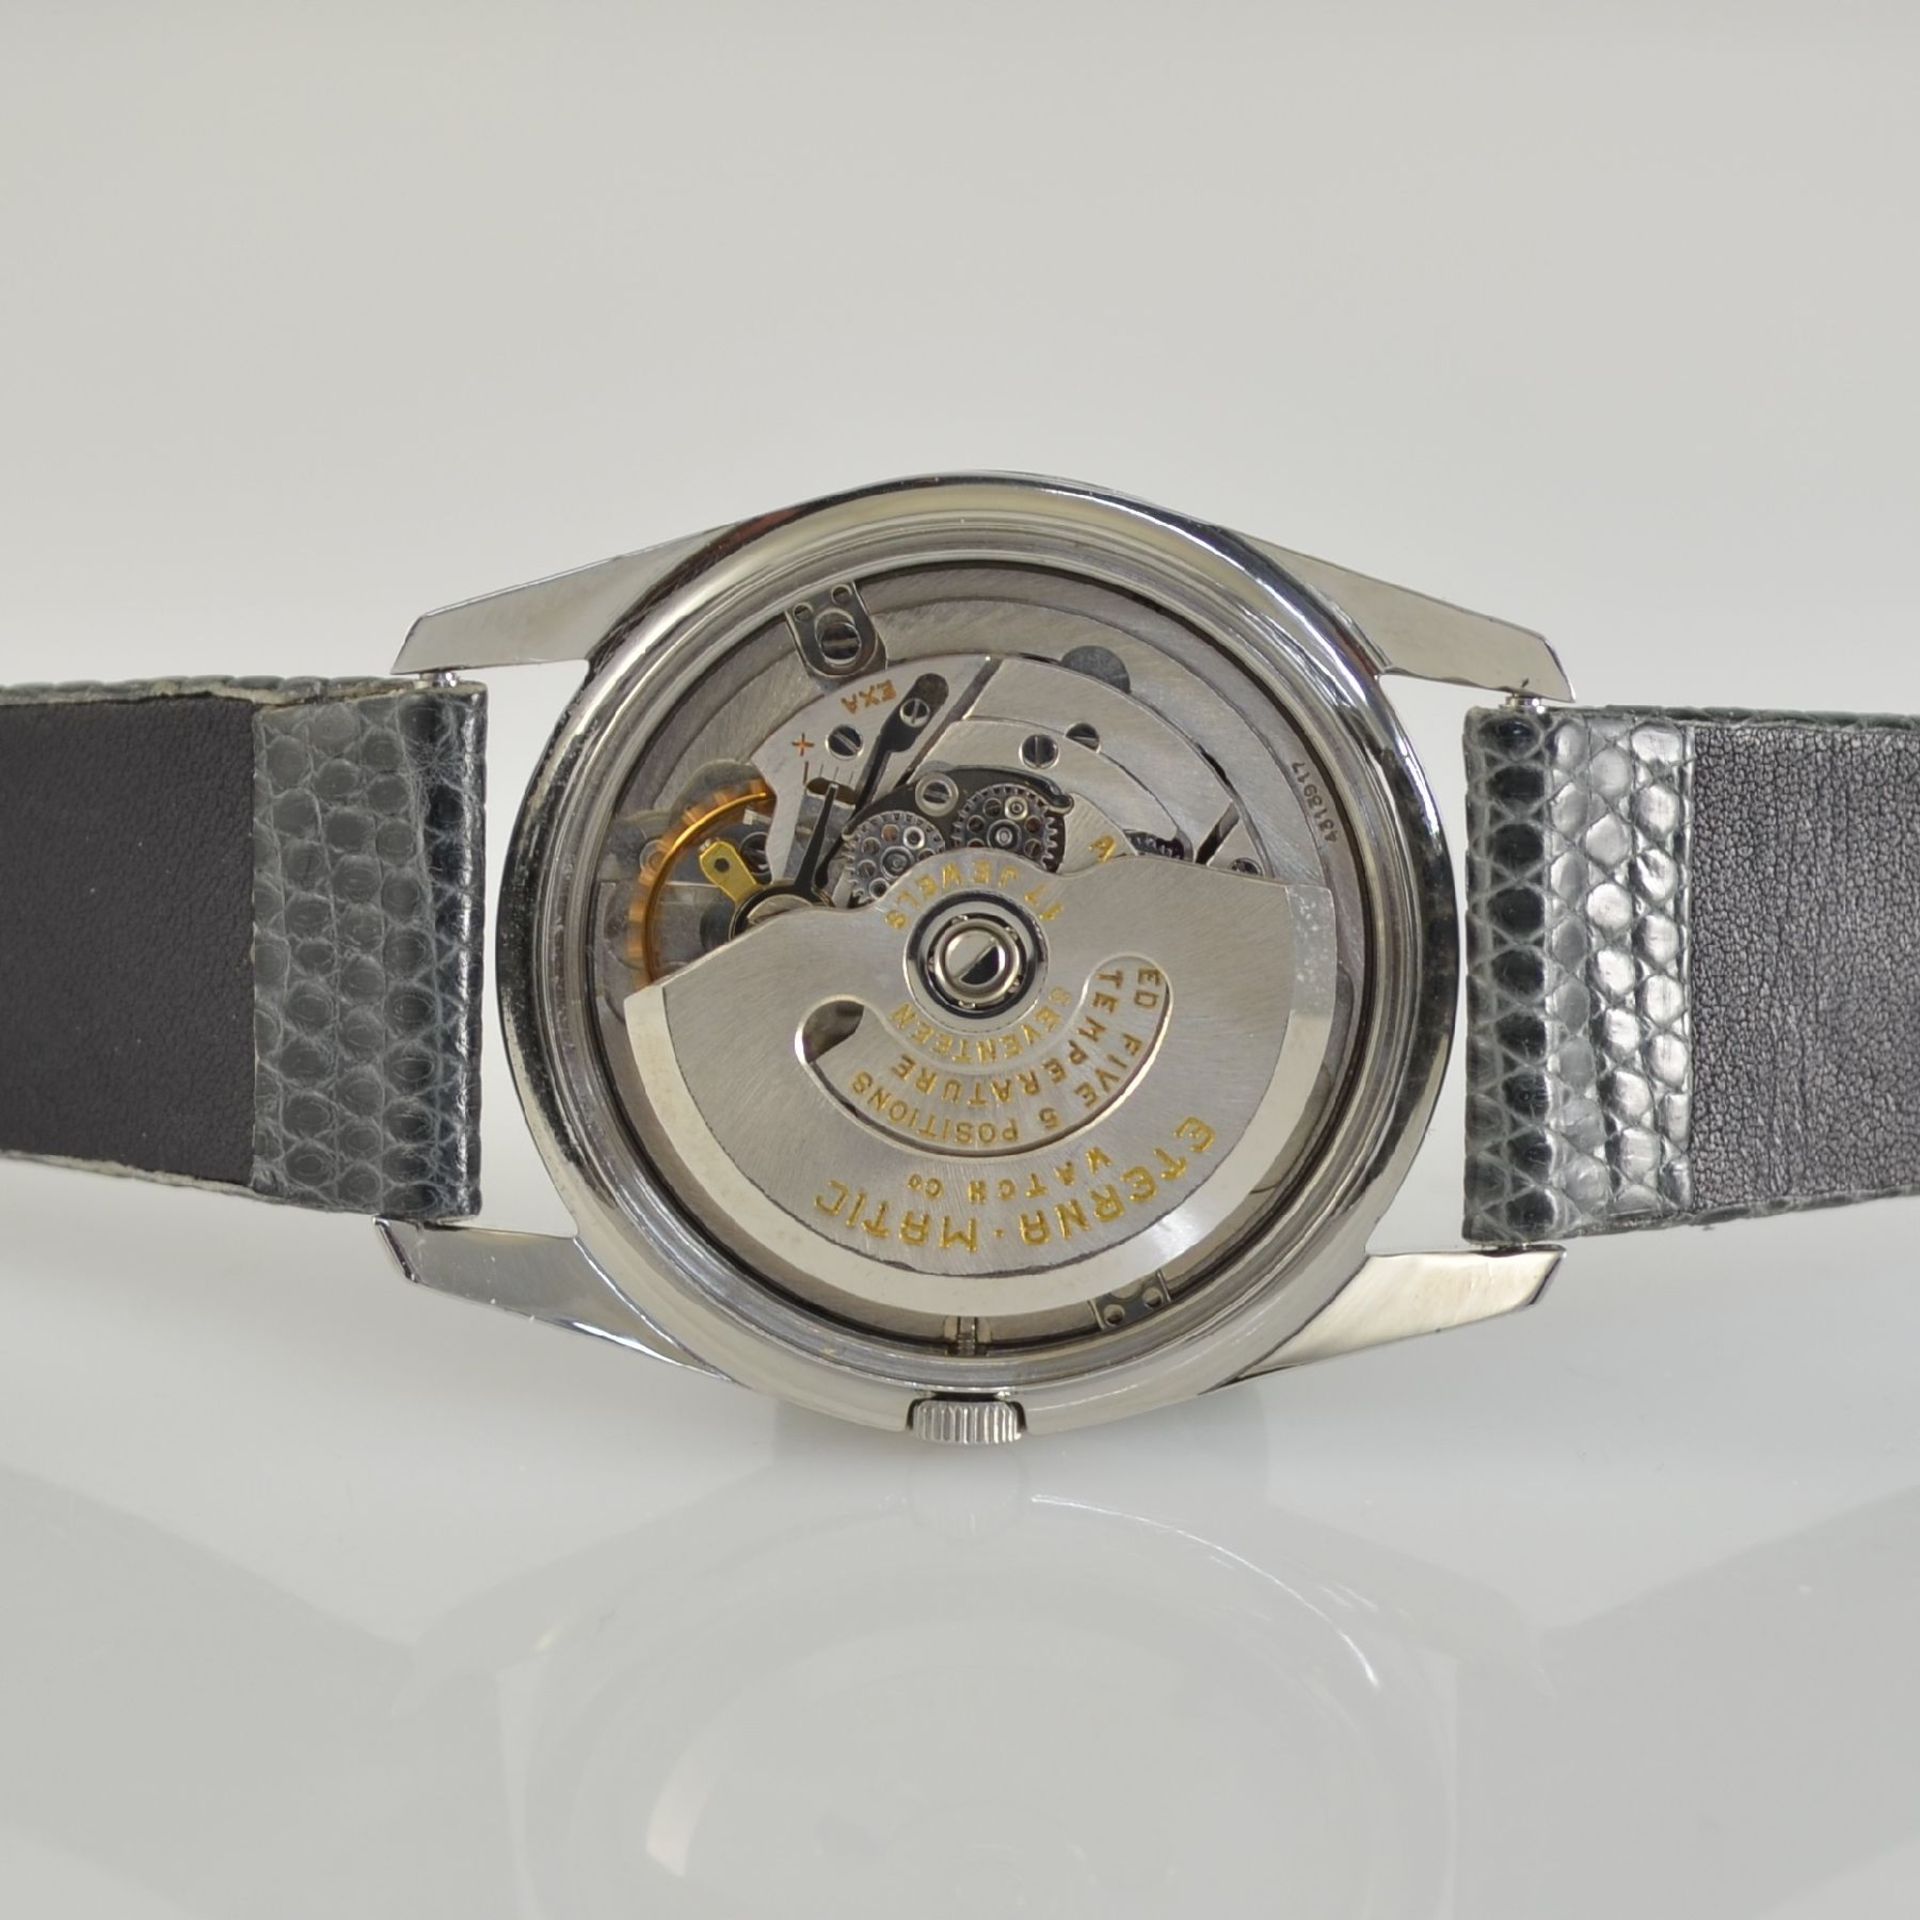 ETERNA-MATIC 2 chronometer in steel, Switzerland around 1960, case backs screwed down, silvered - Bild 12 aus 12